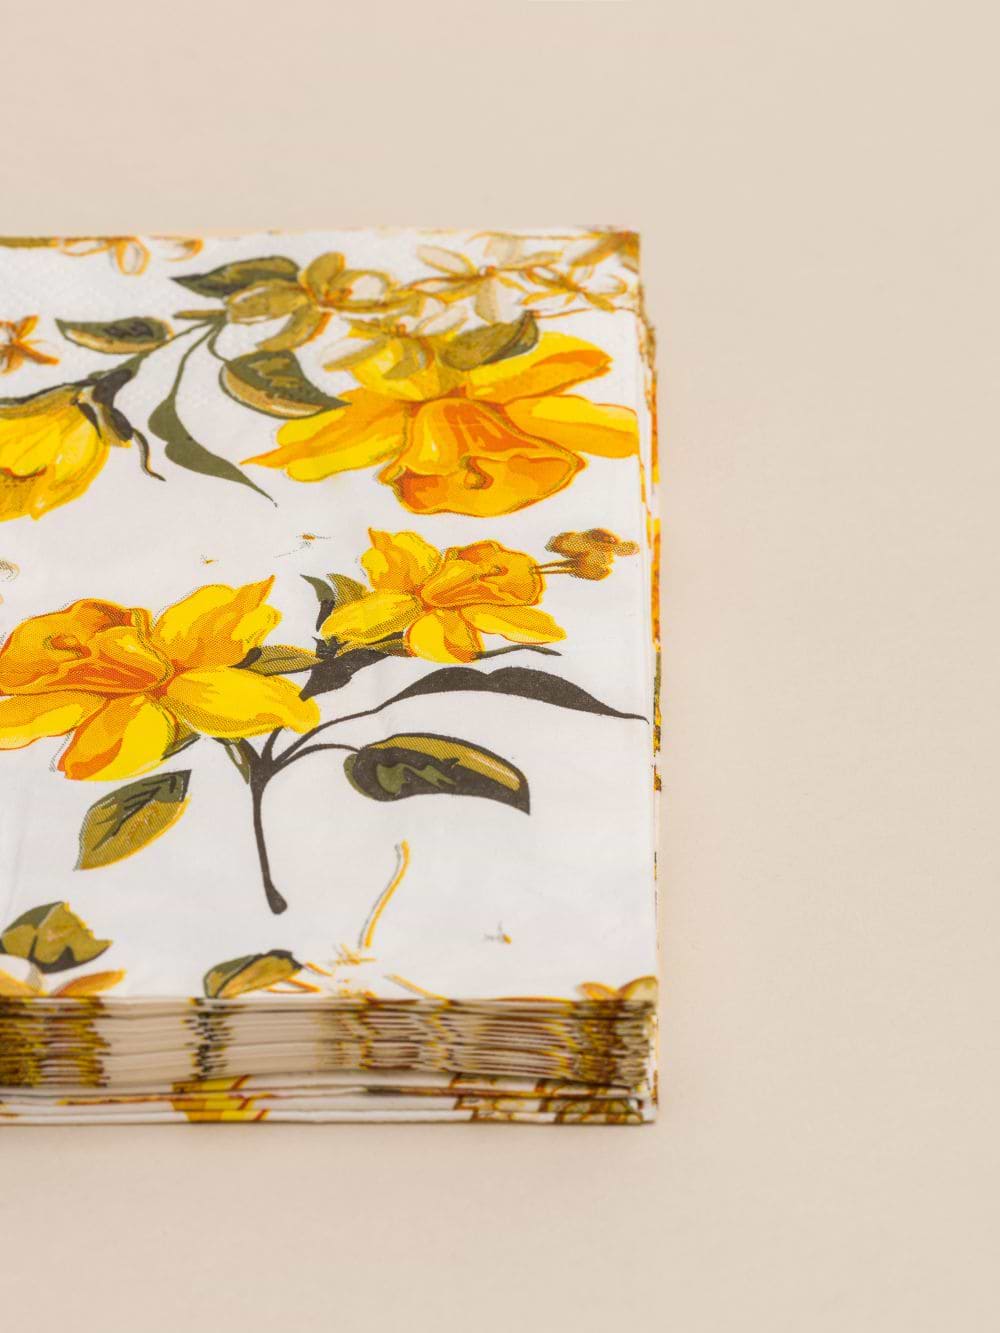 חבילת מפיות נייר בעיצוב פרחים כתומים 16.5X16.5 ס”מ